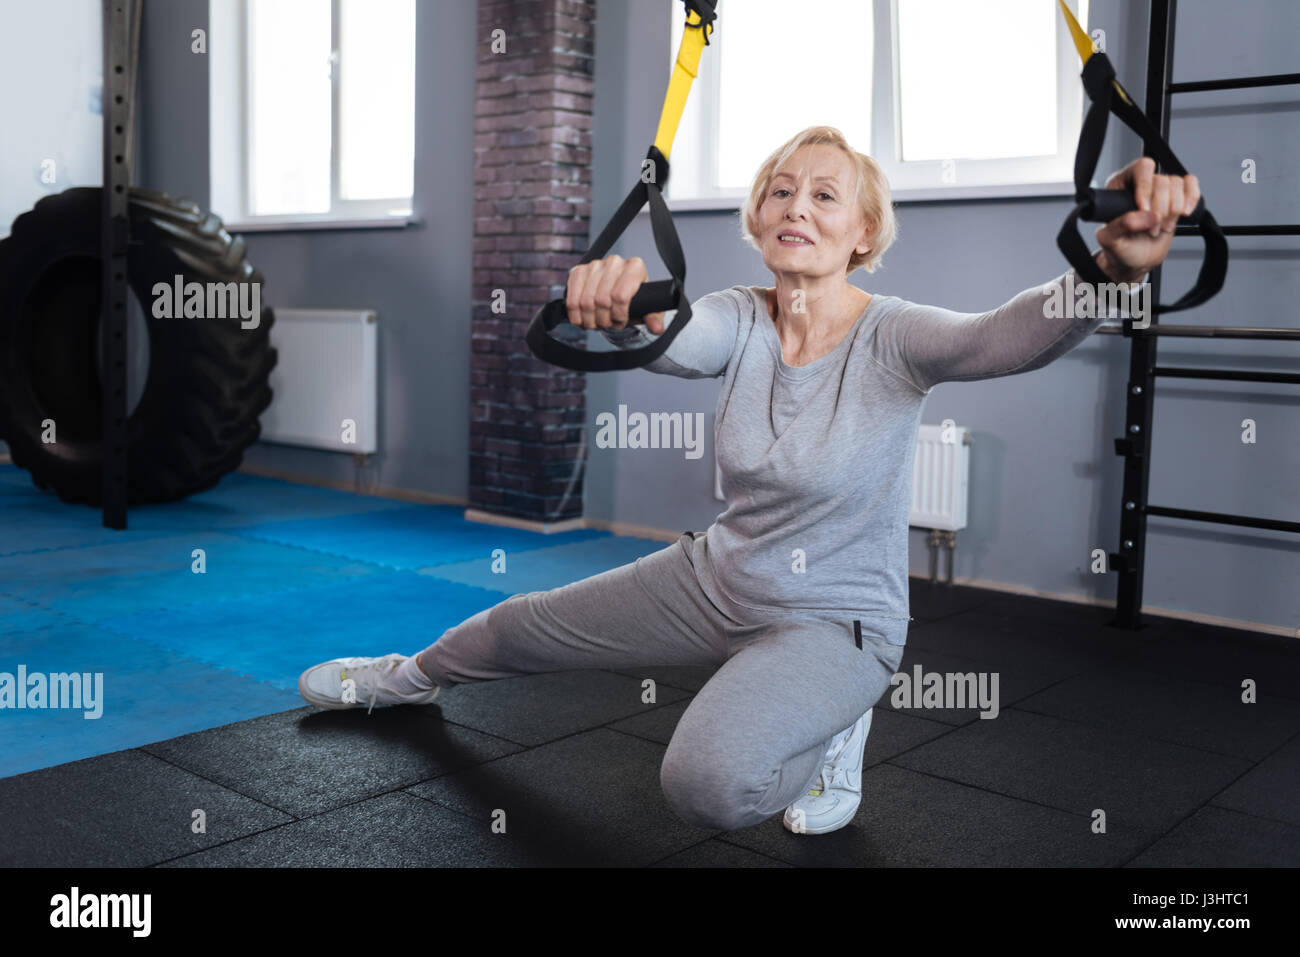 Être concentré. Nice positif femme âgée de faire un exercice physique et de se concentrer sur elle tout en visitant un centre sportif Banque D'Images